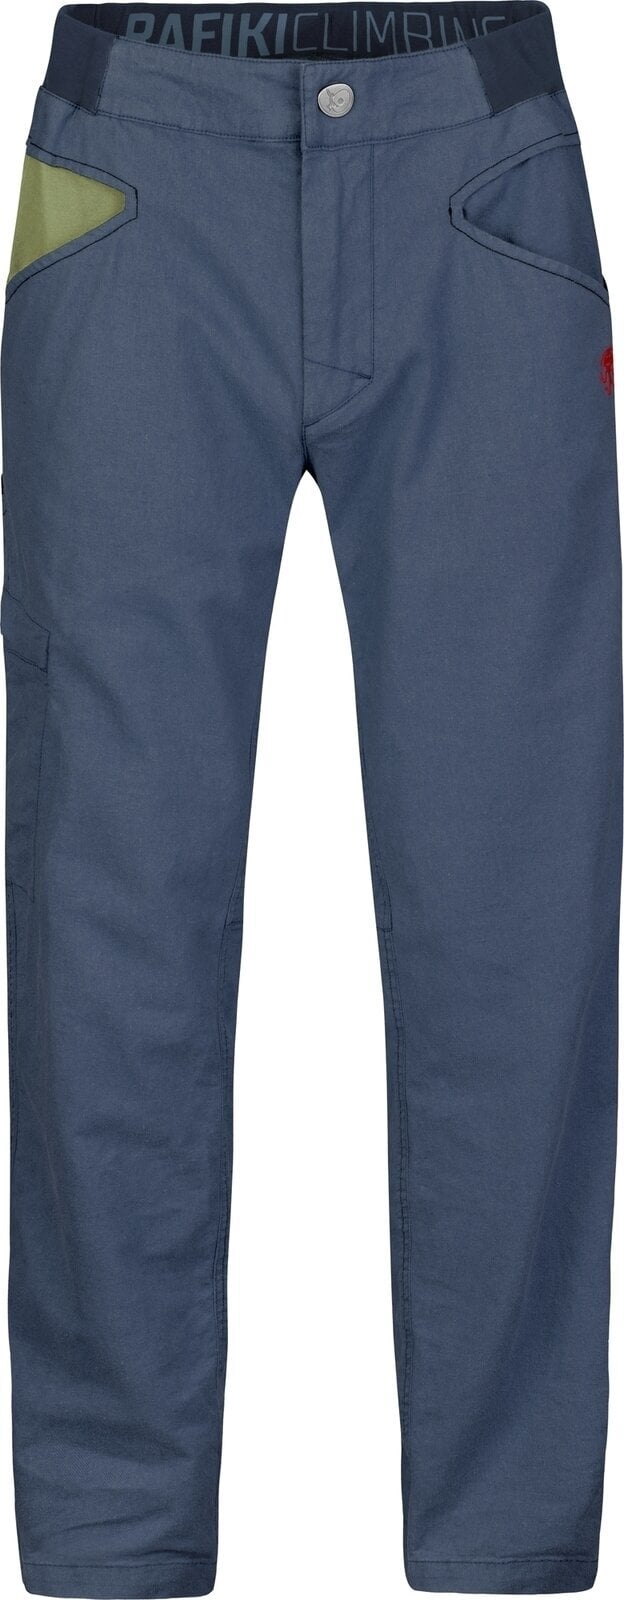 Outdoorové kalhoty Rafiki Grip Man Pants India Ink S Outdoorové kalhoty